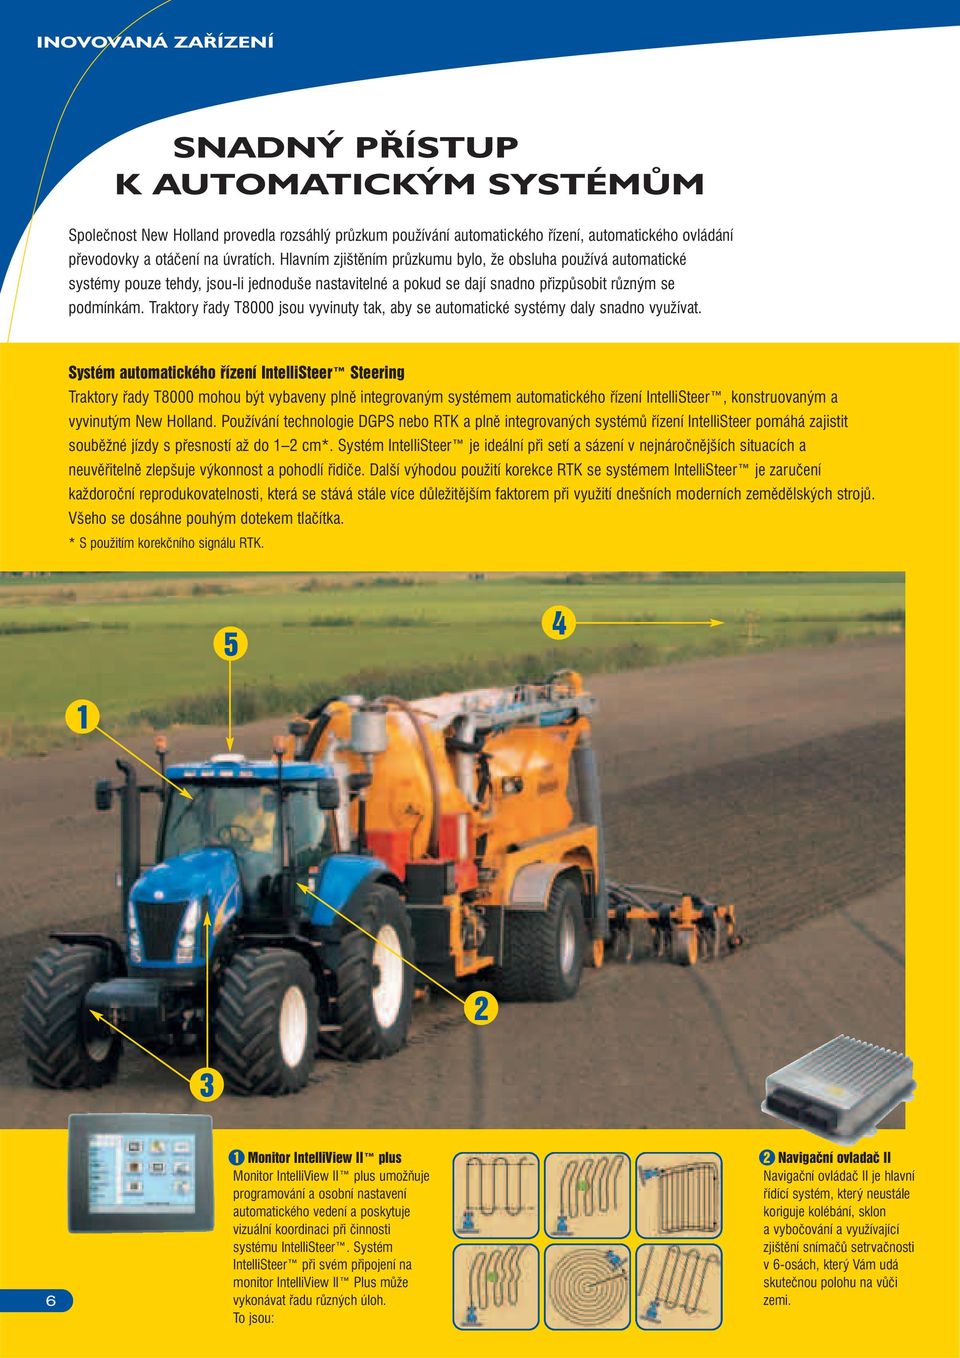 Traktory řady T8000 jsou vyvinuty tak, aby se automatické systémy daly snadno využívat.